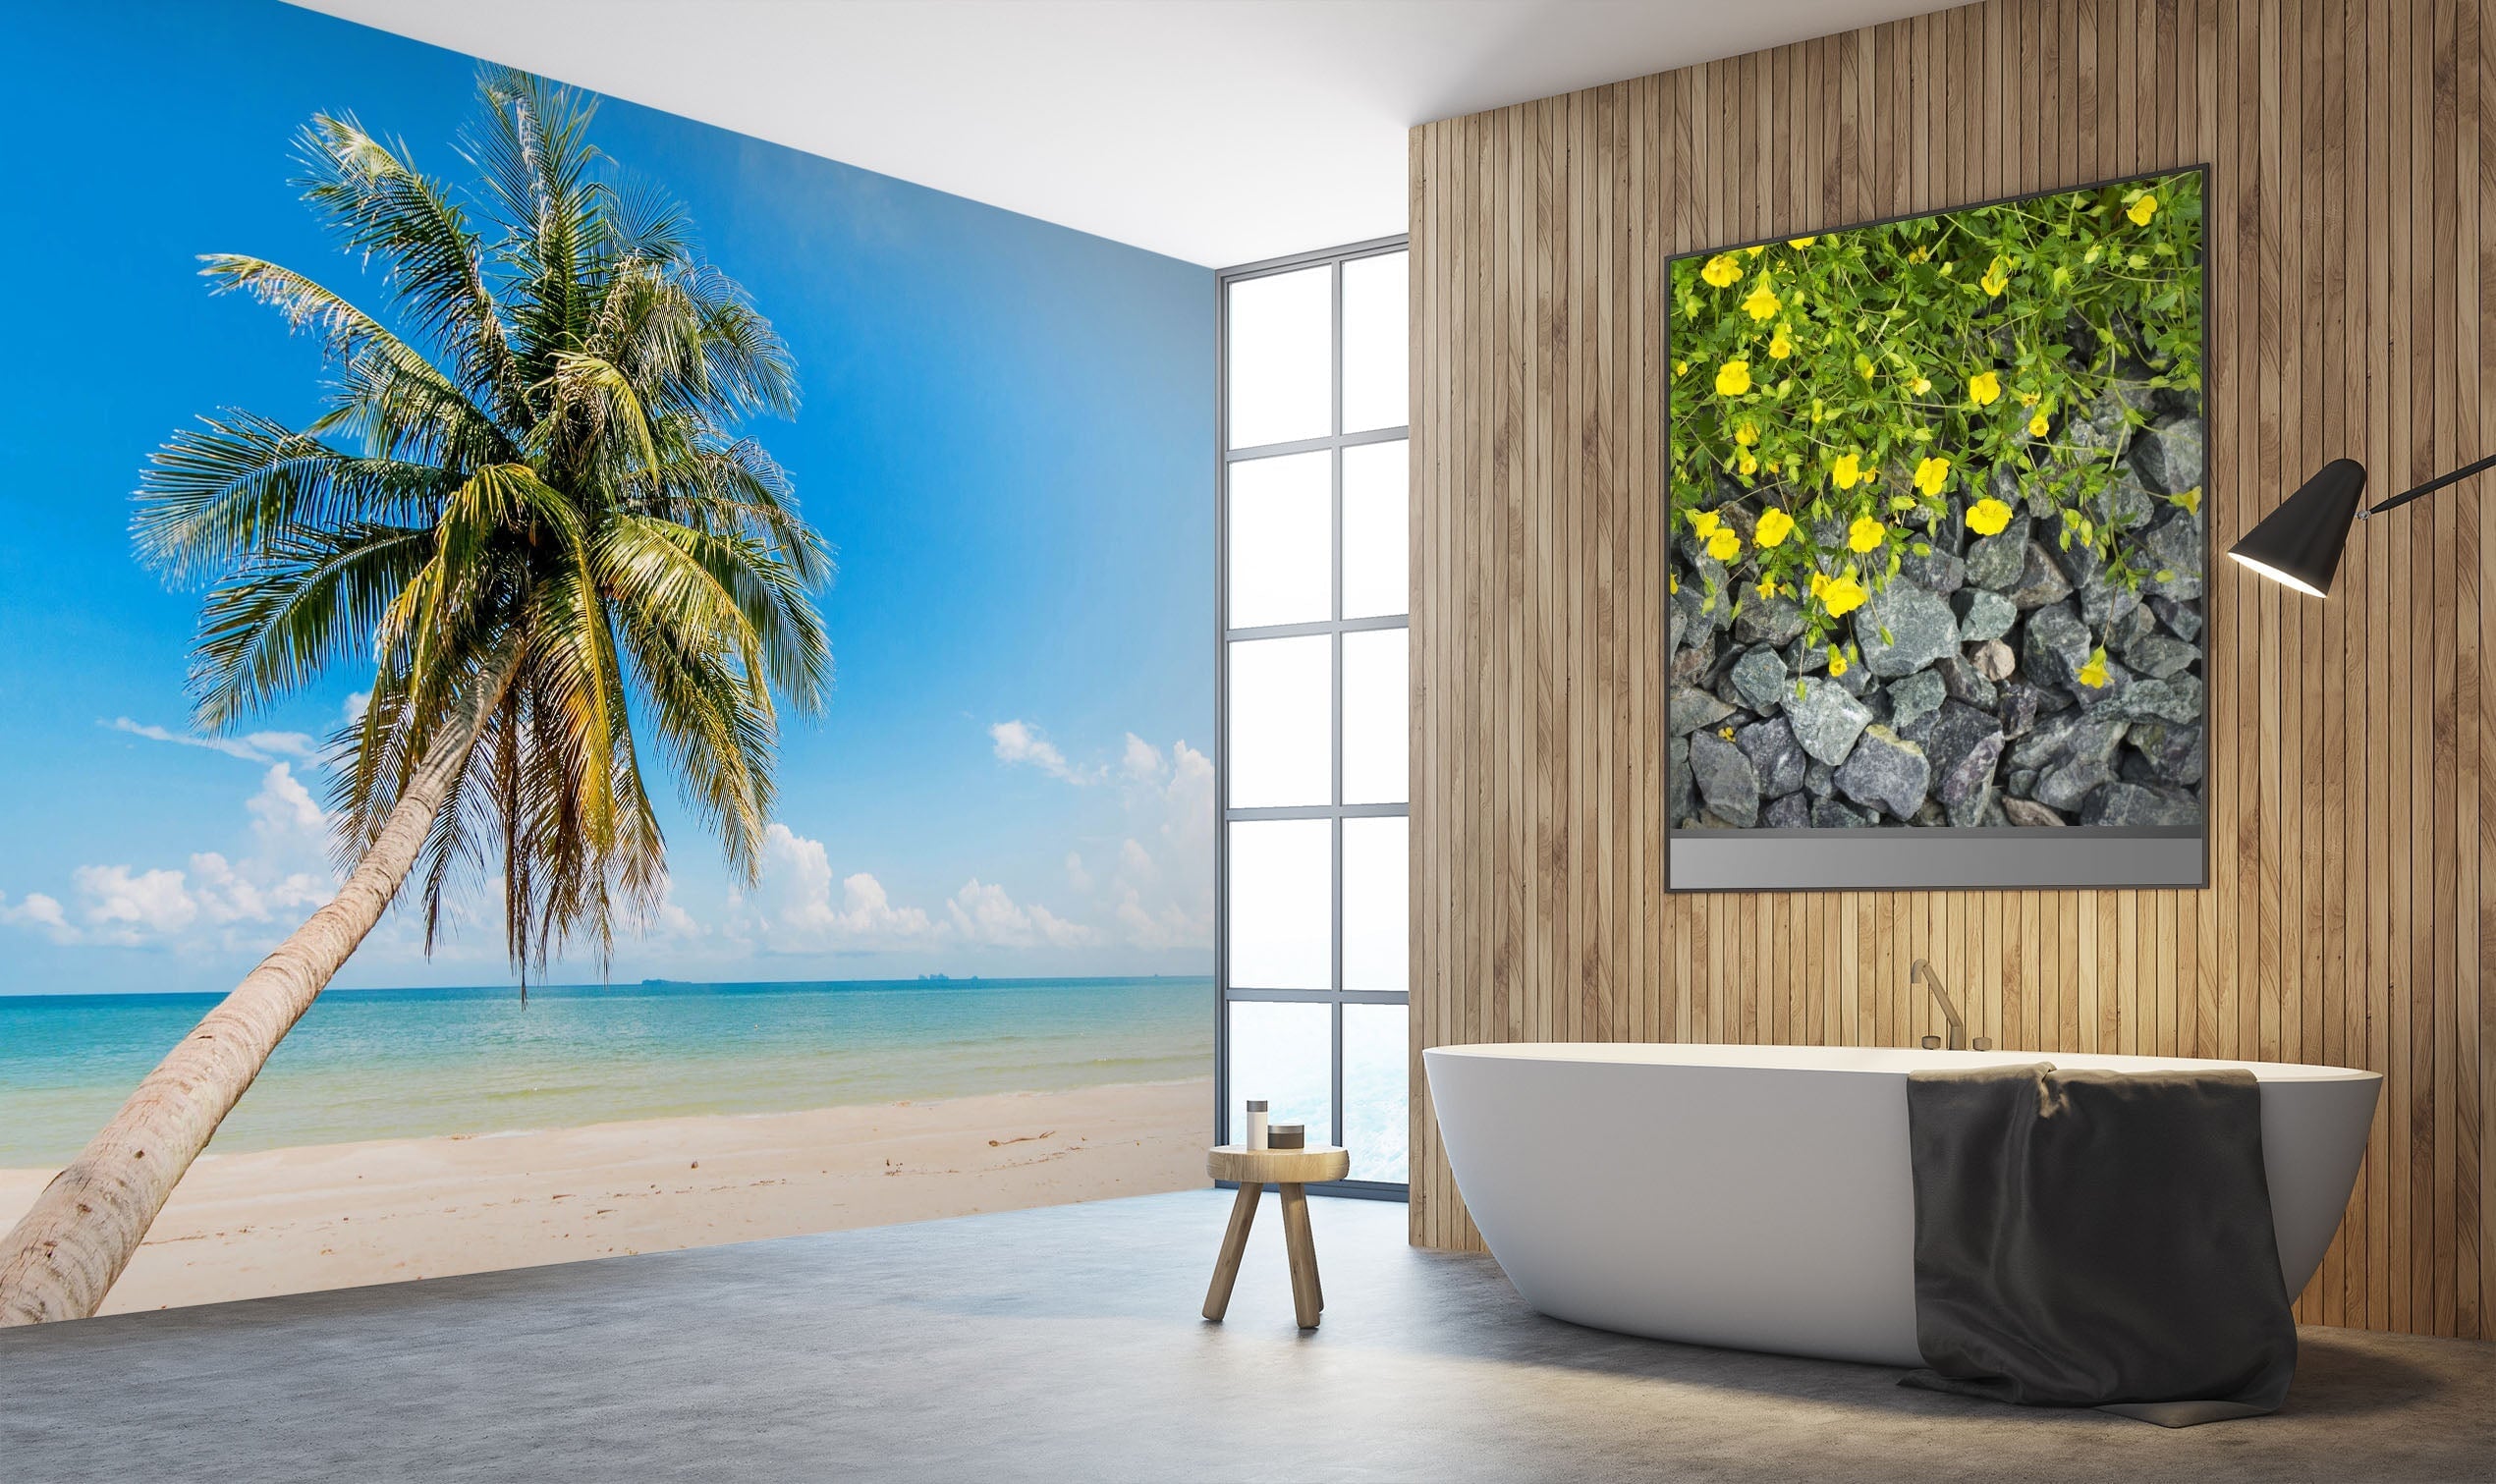 3D Coconut Tree 010 Wall Murals Wallpaper AJ Wallpaper 2 